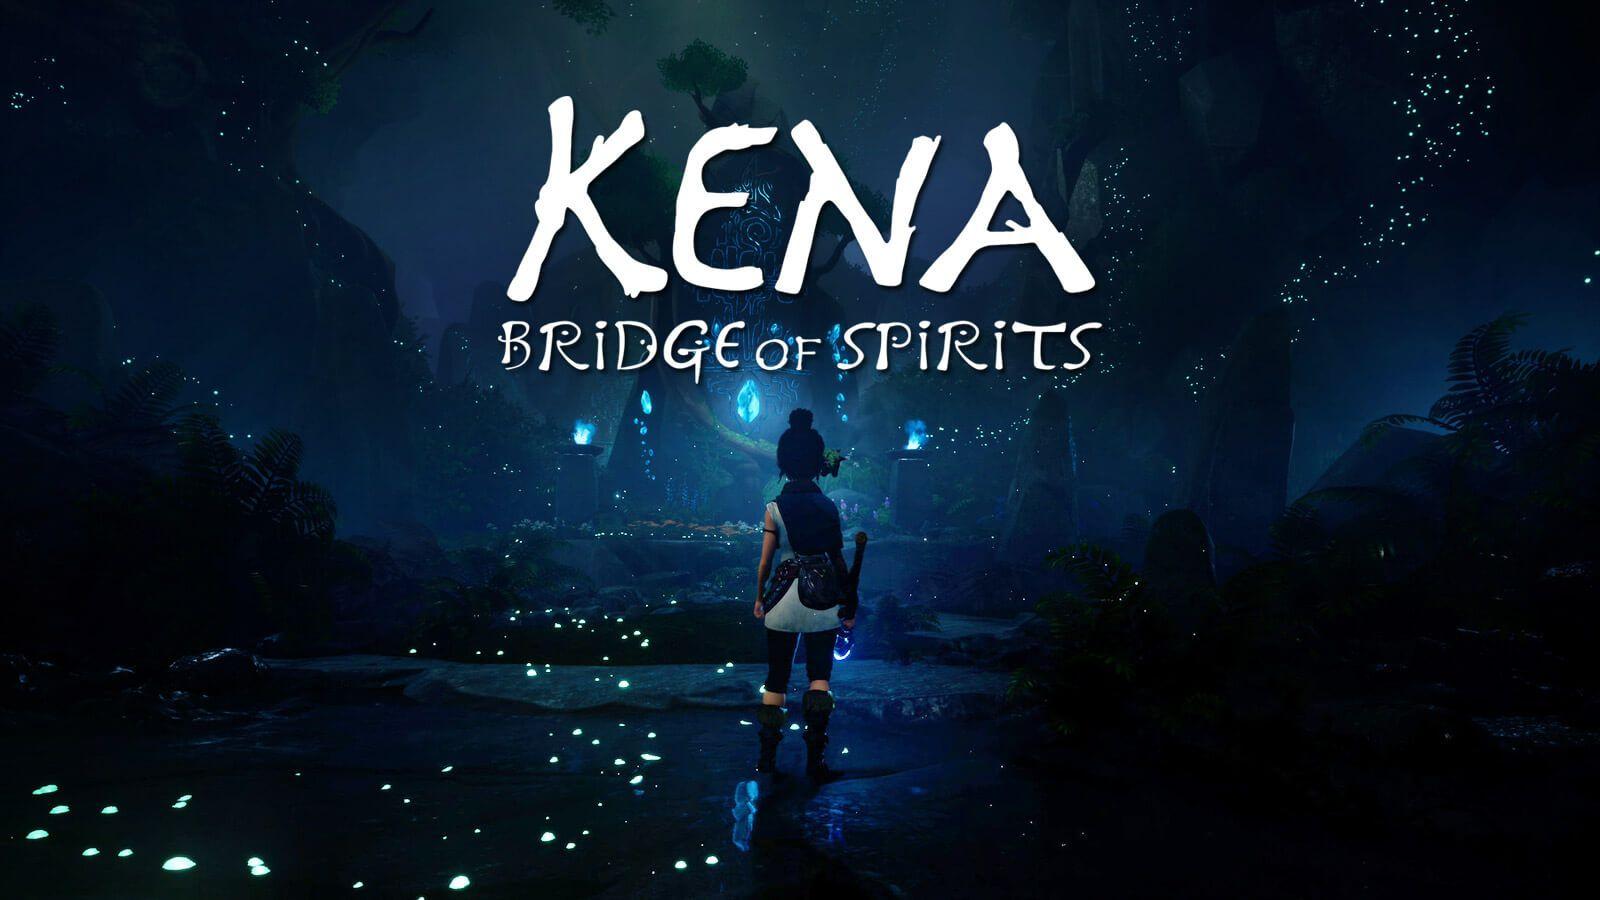 download bridge of spirits for free